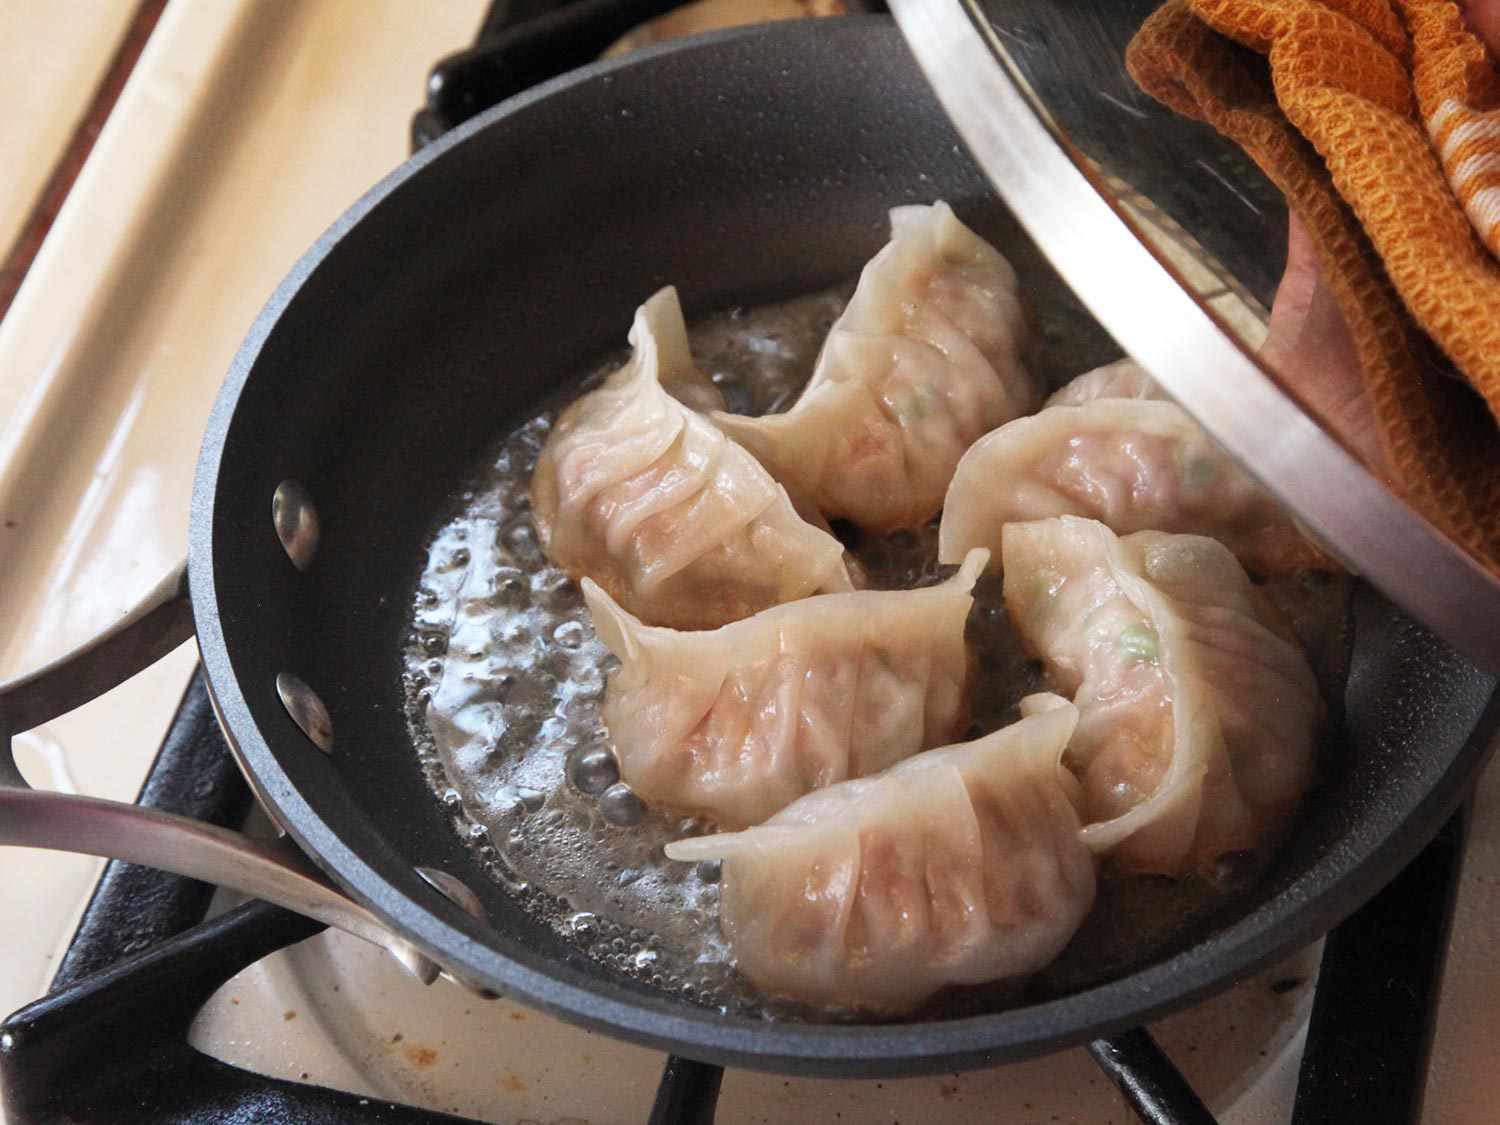 揭开一锅蒸猪肉卷心菜煎饺的盖子。